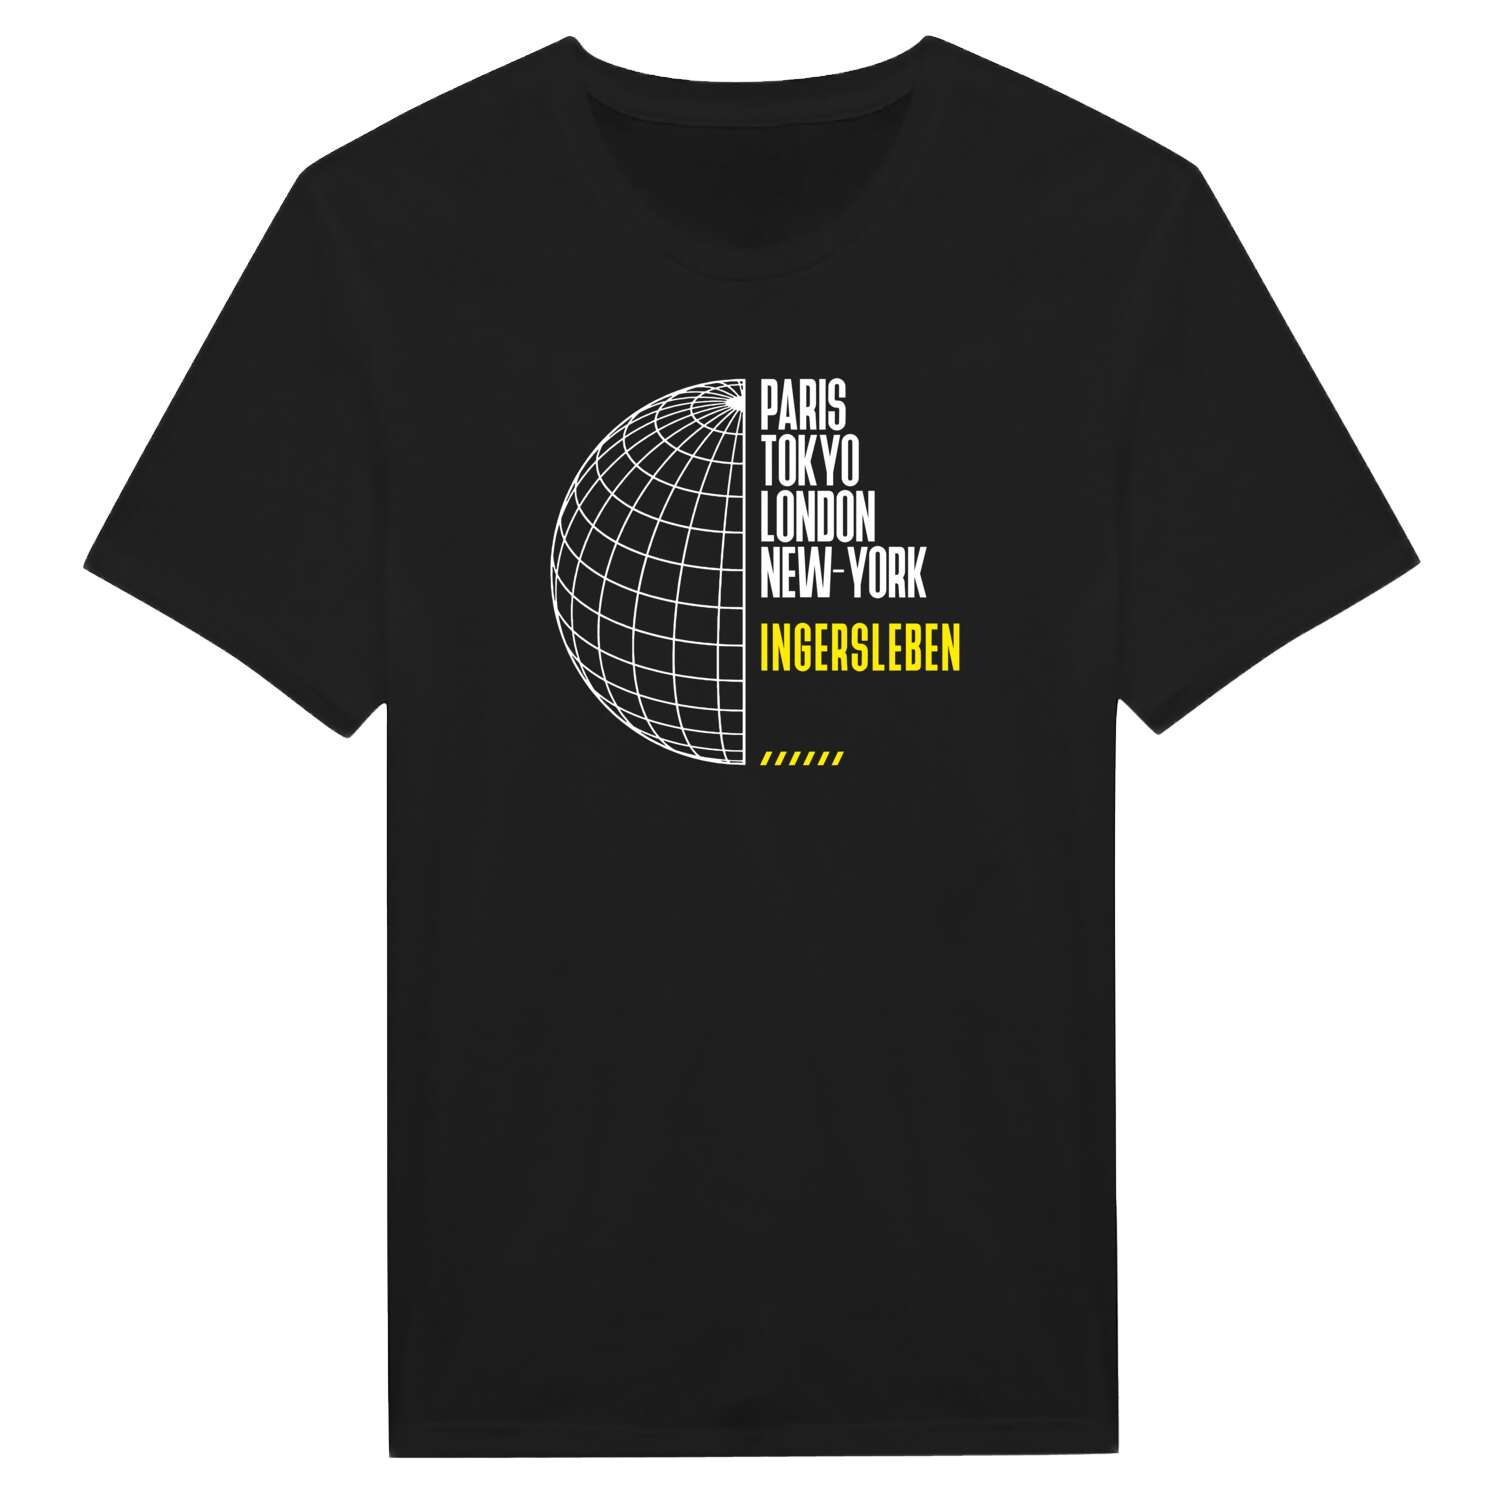 Ingersleben T-Shirt »Paris Tokyo London«